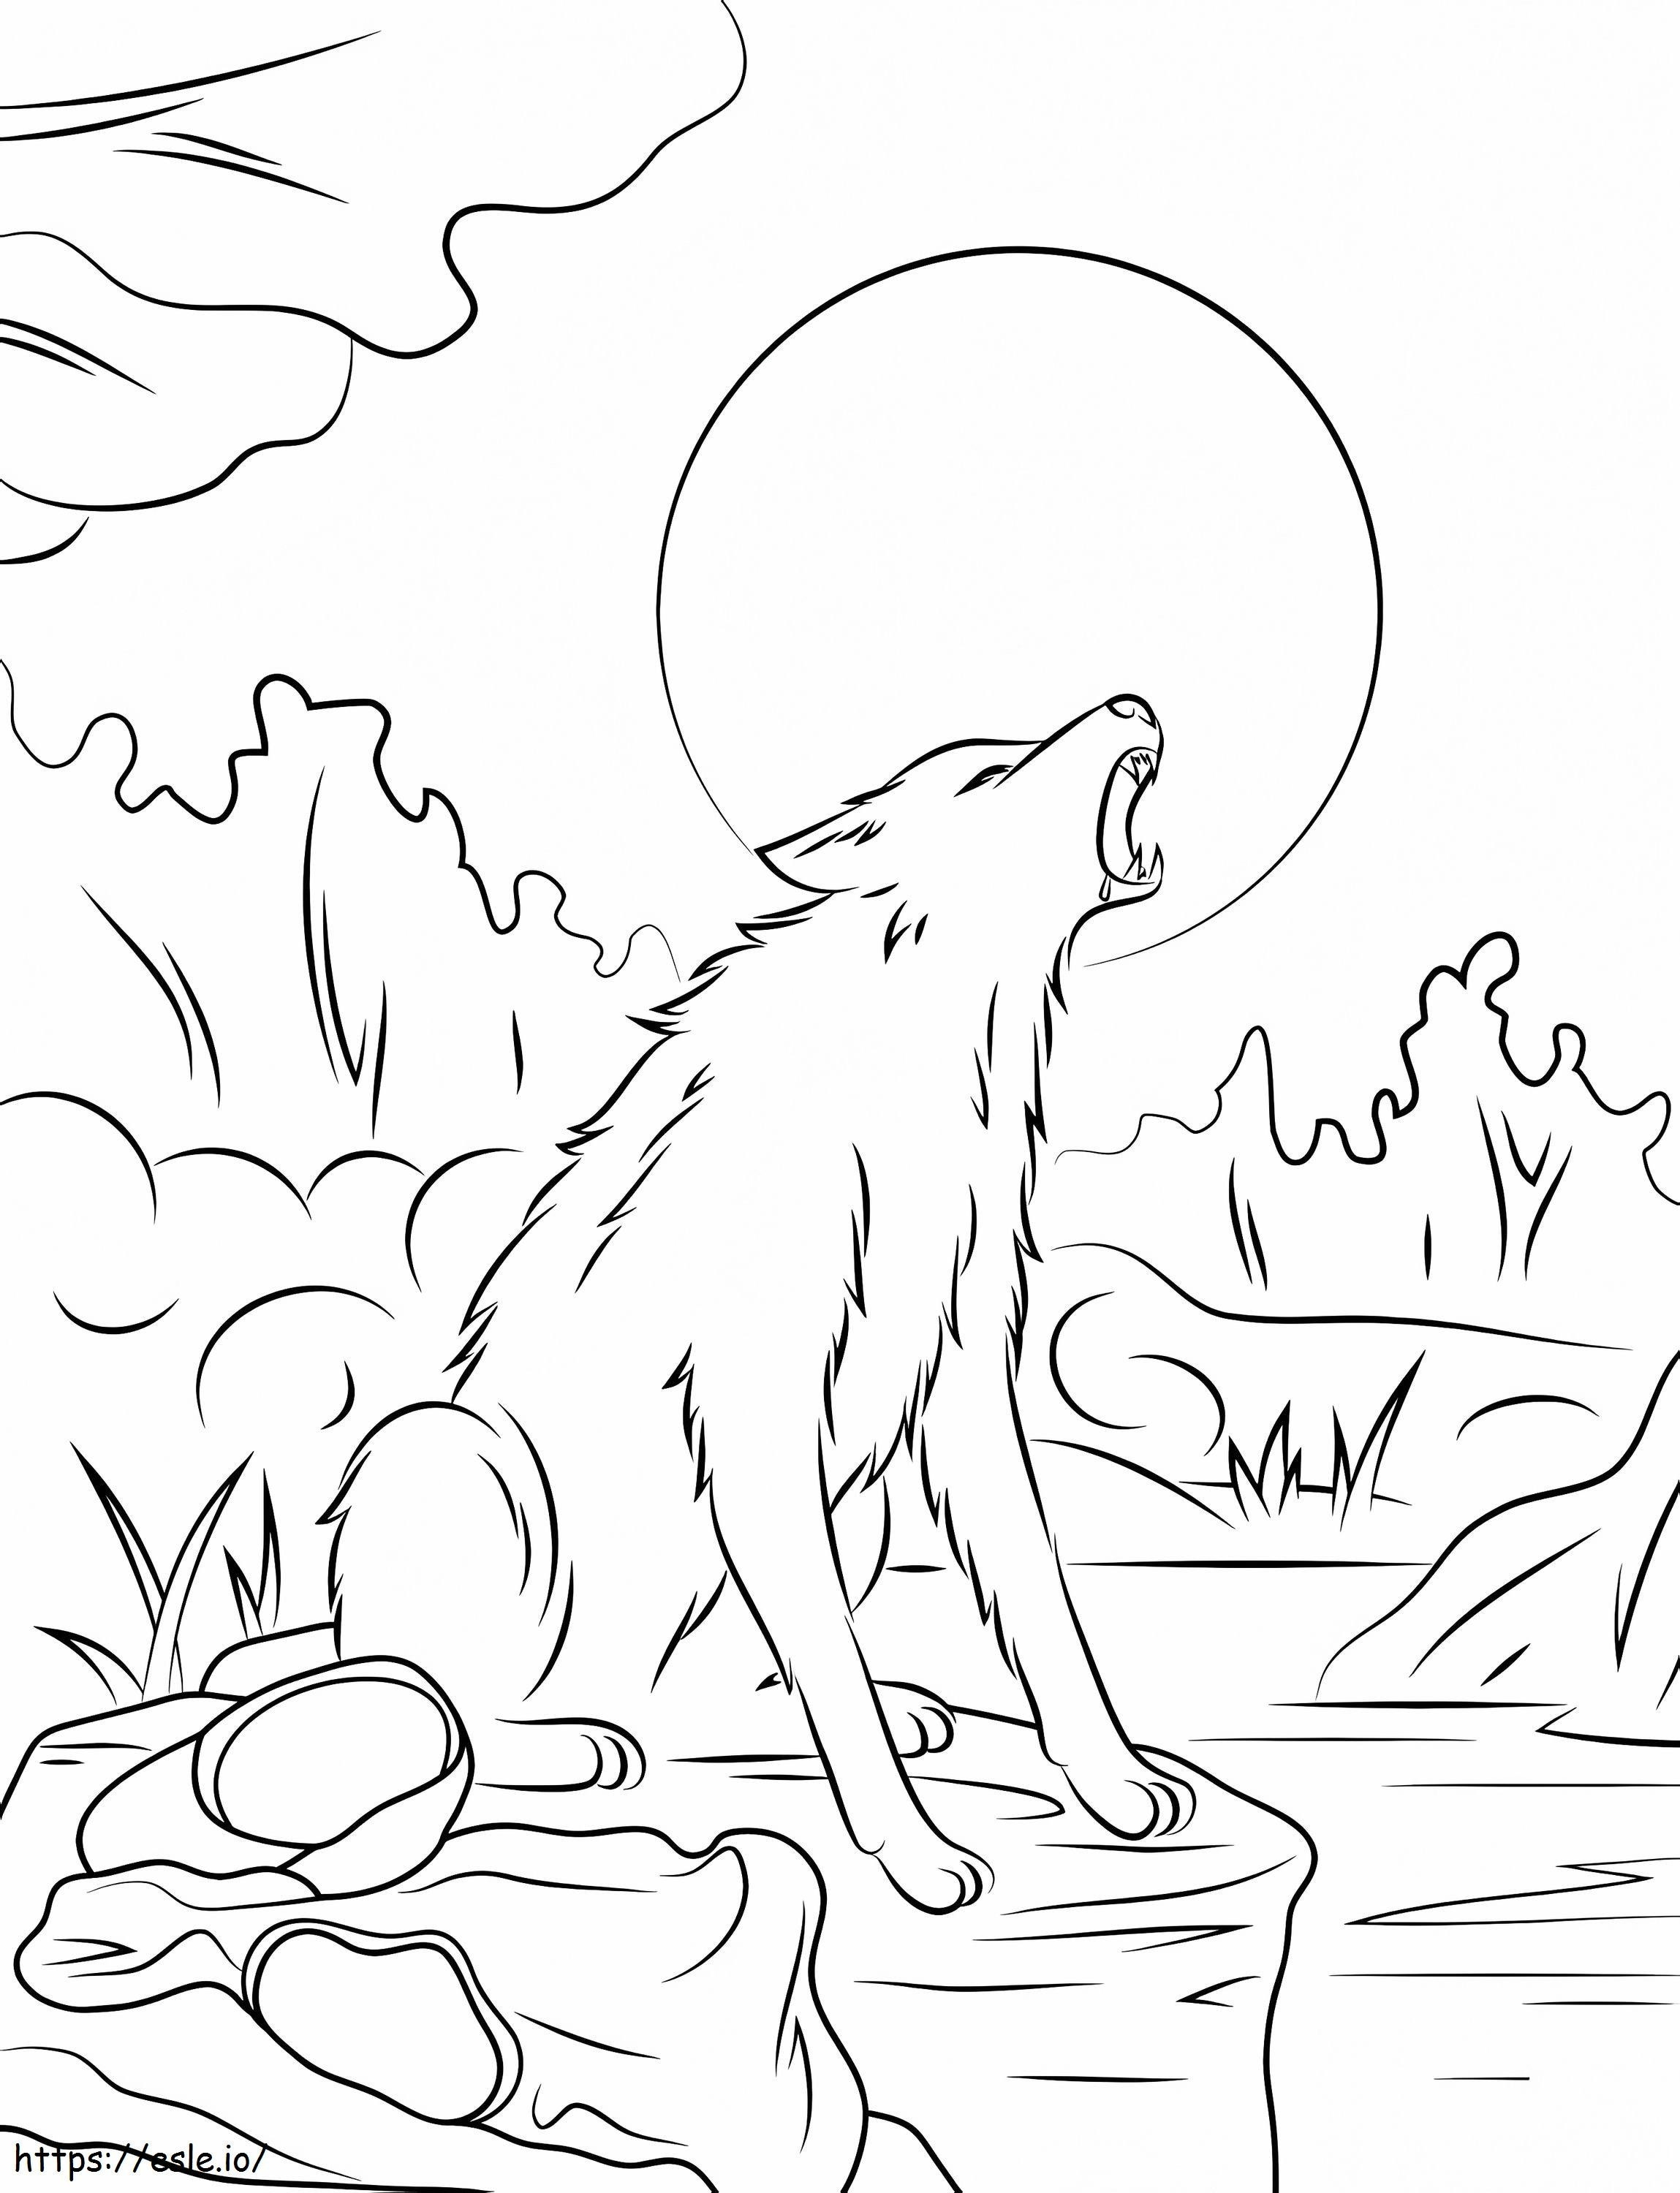 Die Werwolf-Gänsehaut ausmalbilder